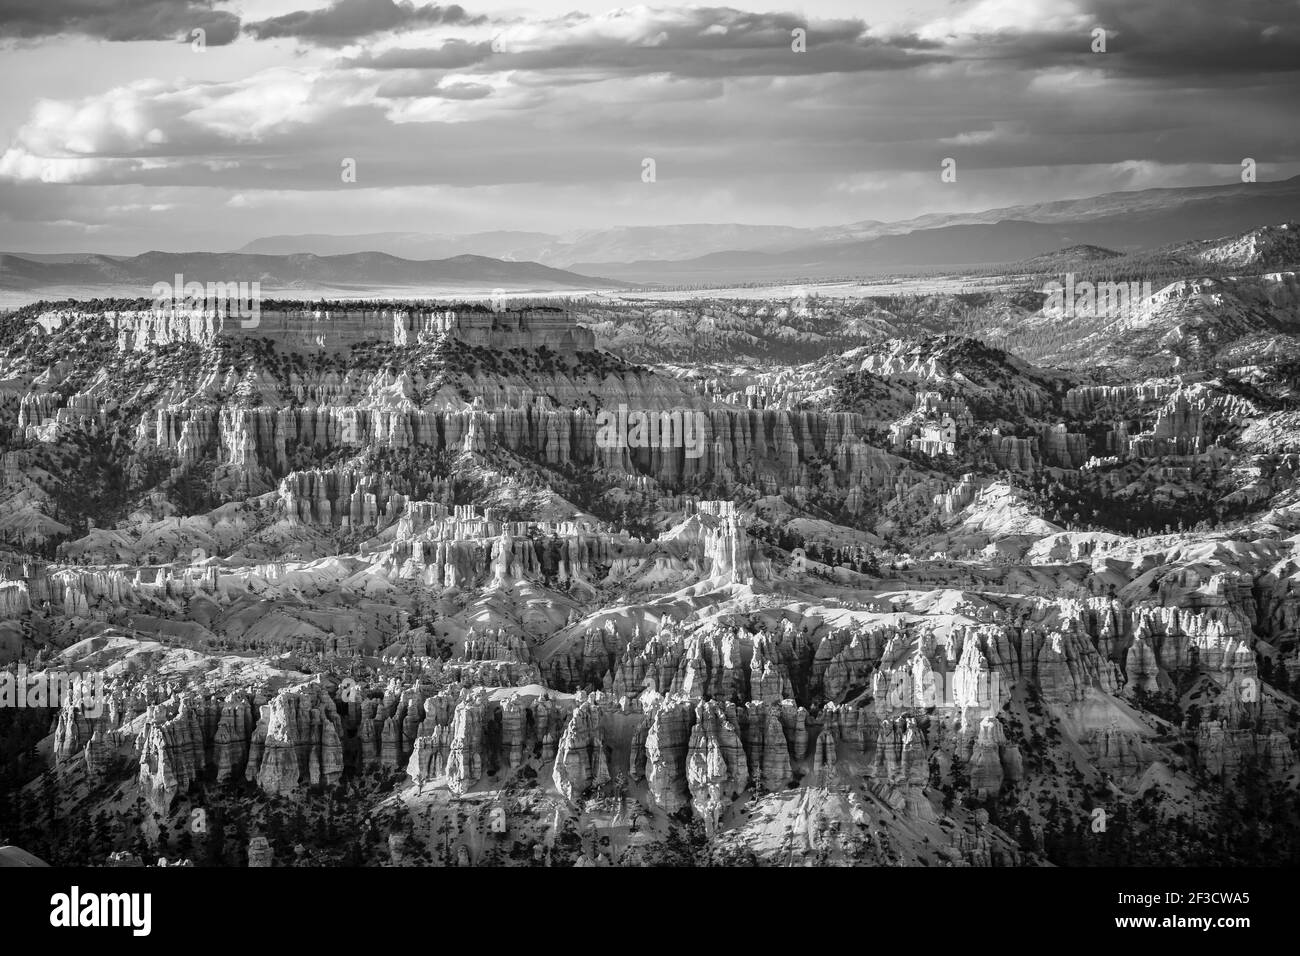 Parc national de Bryce Canyon, Utah, États-Unis. Noir et blanc (monochrome) paysage Banque D'Images